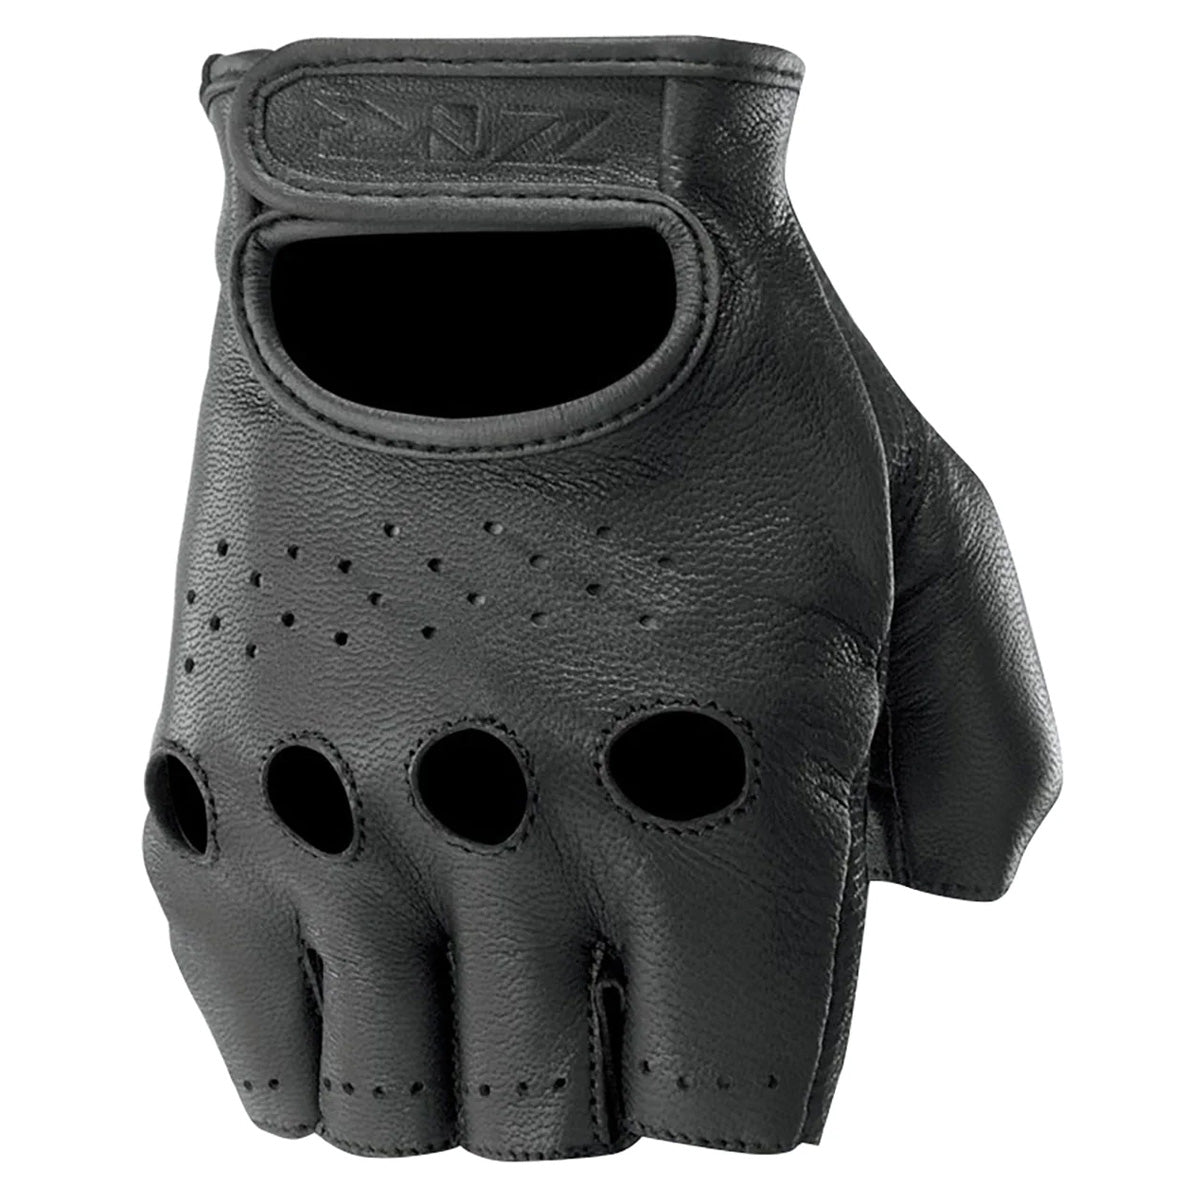 
Z1R Ravage Fingerless Leather Men's Street Gloves 